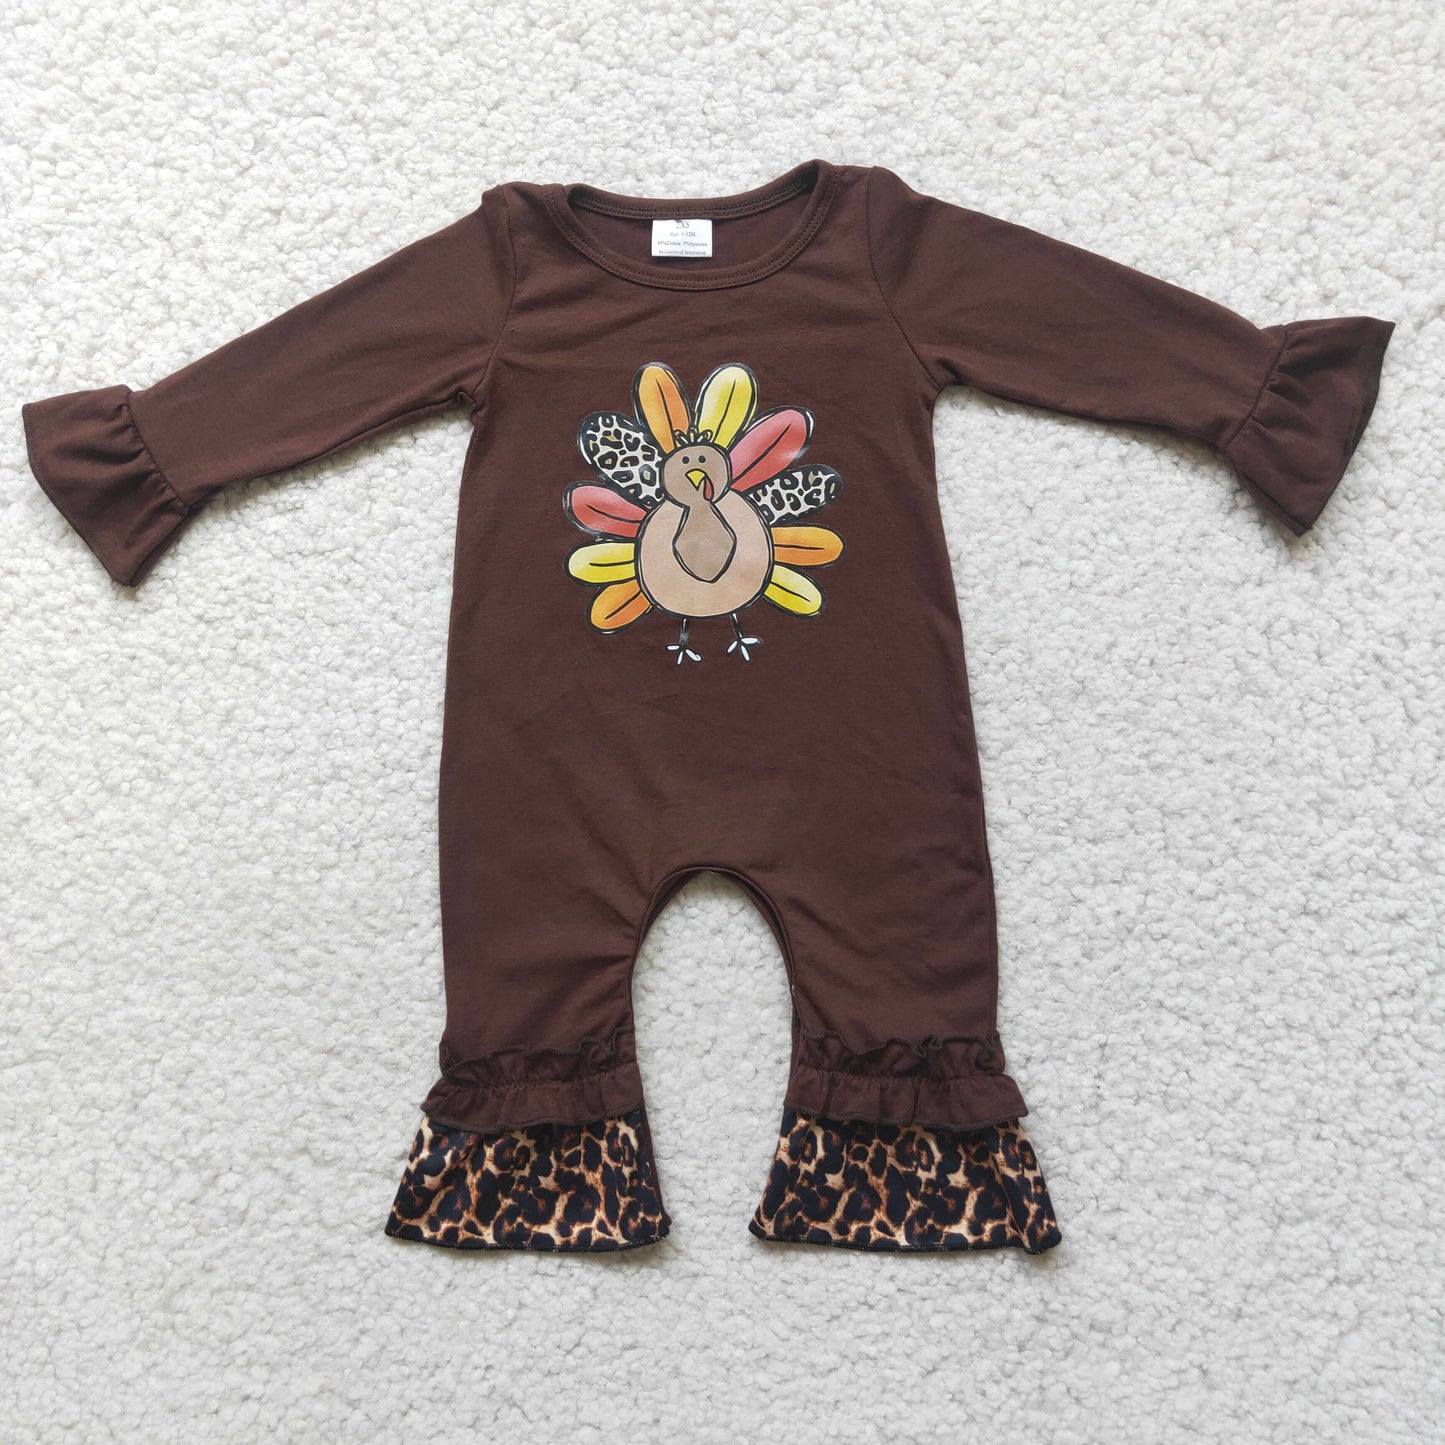 Turkey vinyl brown cotton baby romper